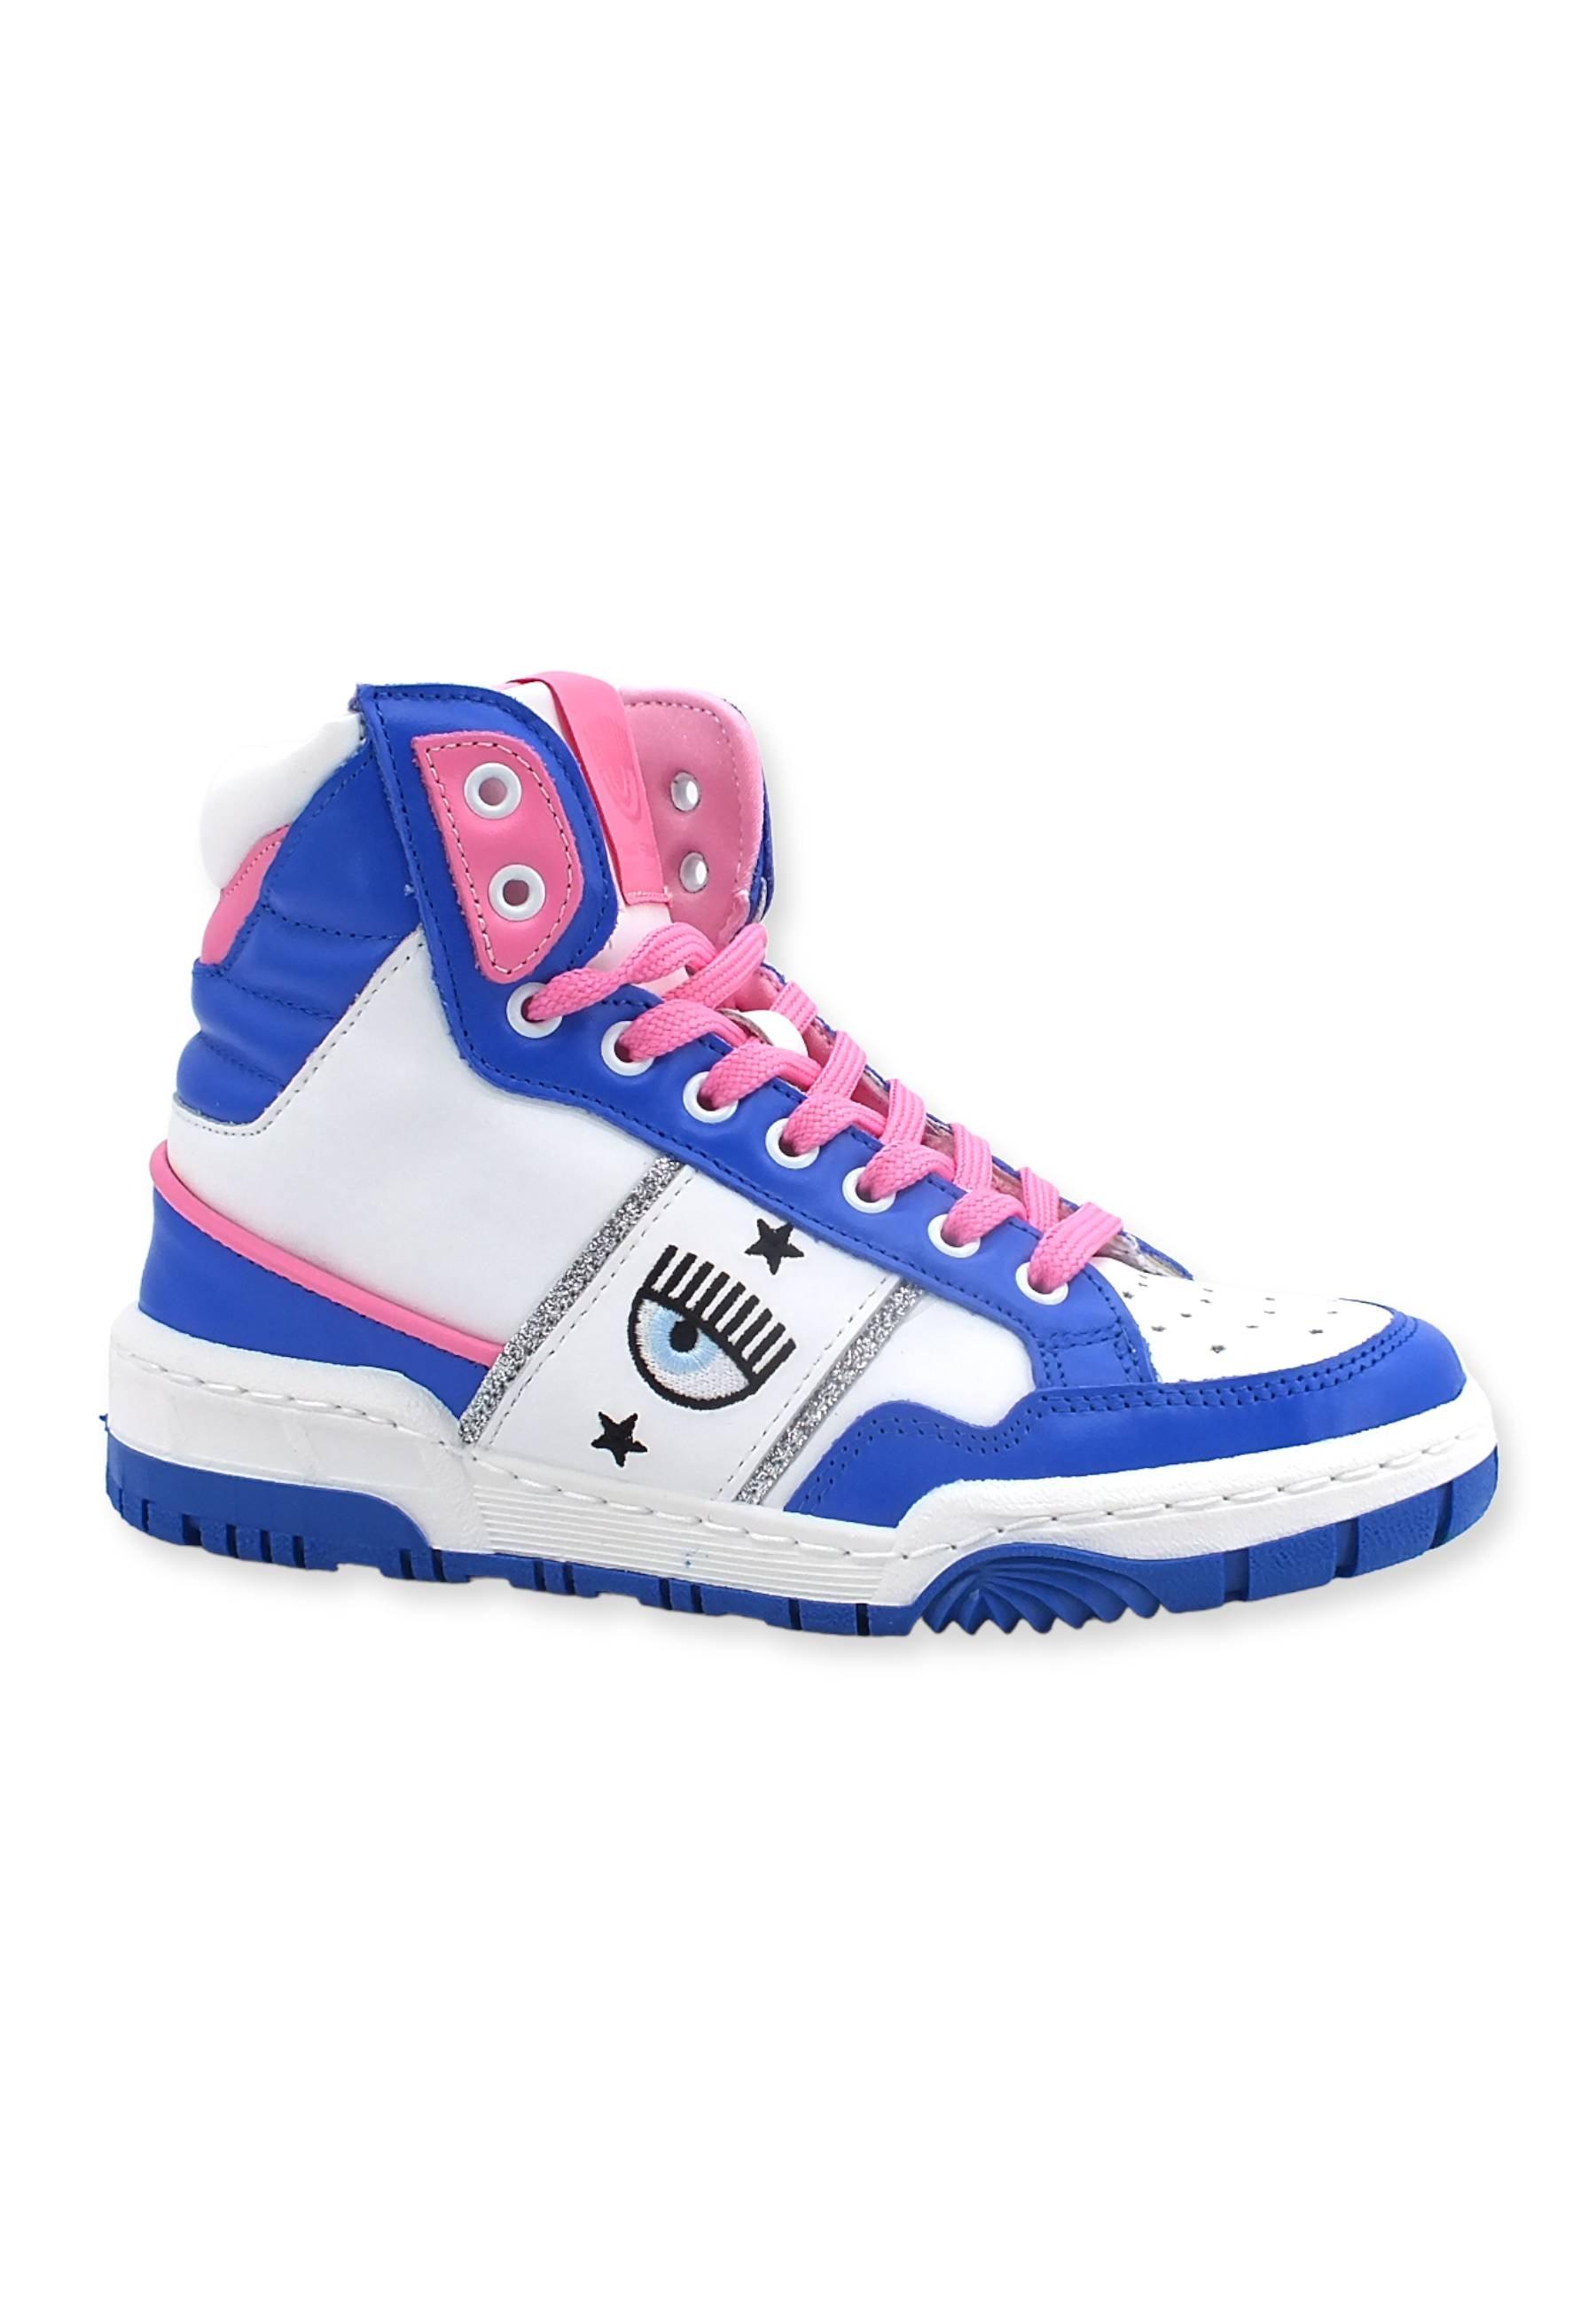 CHIARA FERRAGNI Sneaker High Donna White Blue CF3006-032 - Sandrini Calzature e Abbigliamento